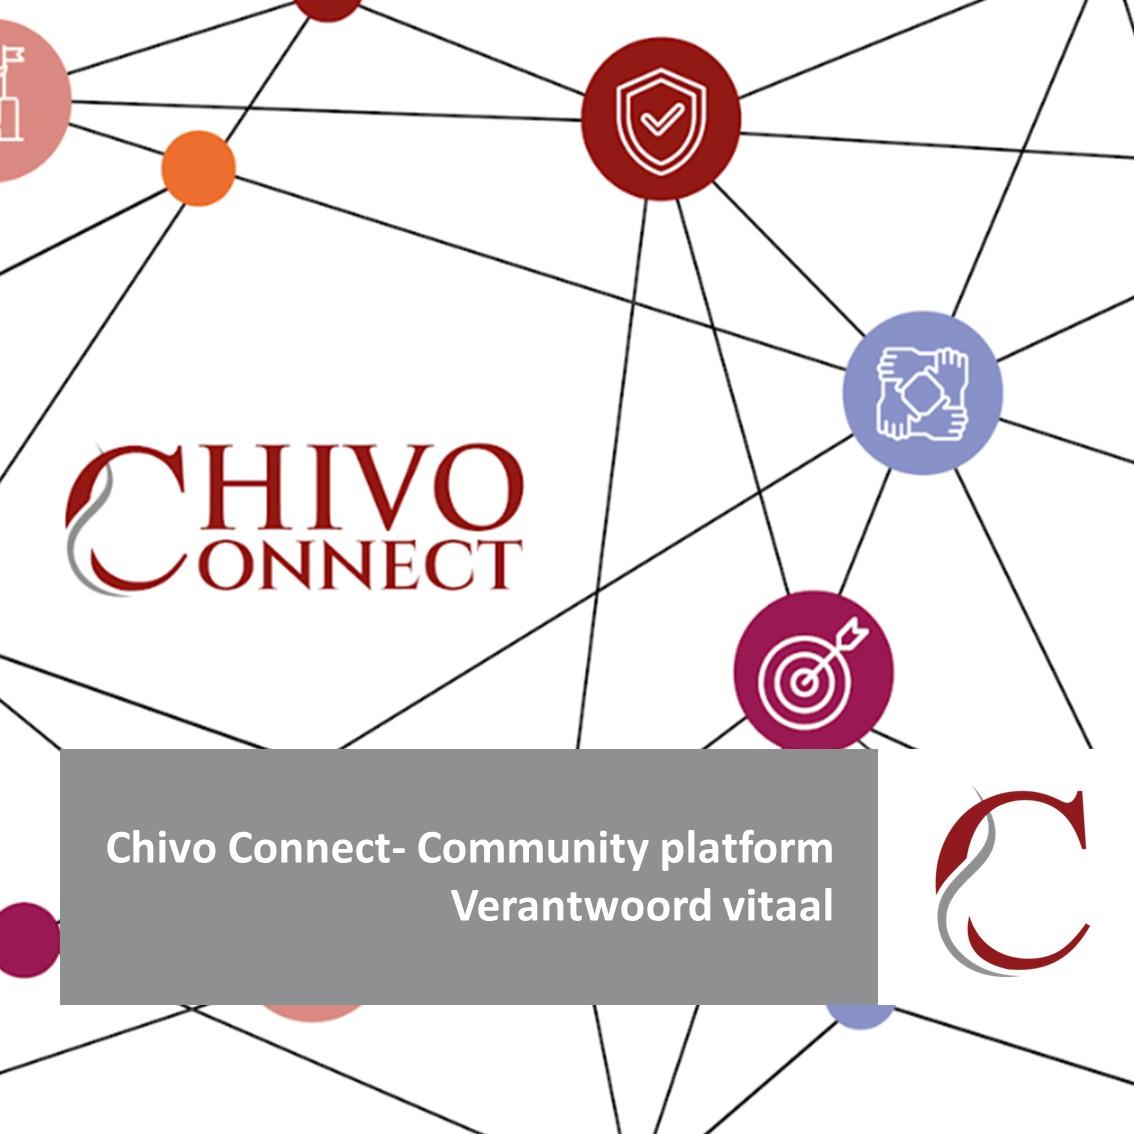 Wil je op de hoogte gehouden worden over nieuws op het gebied van vitaliteit en leefstijl, dan kan dat via Connect, het communityplatform van Chivo